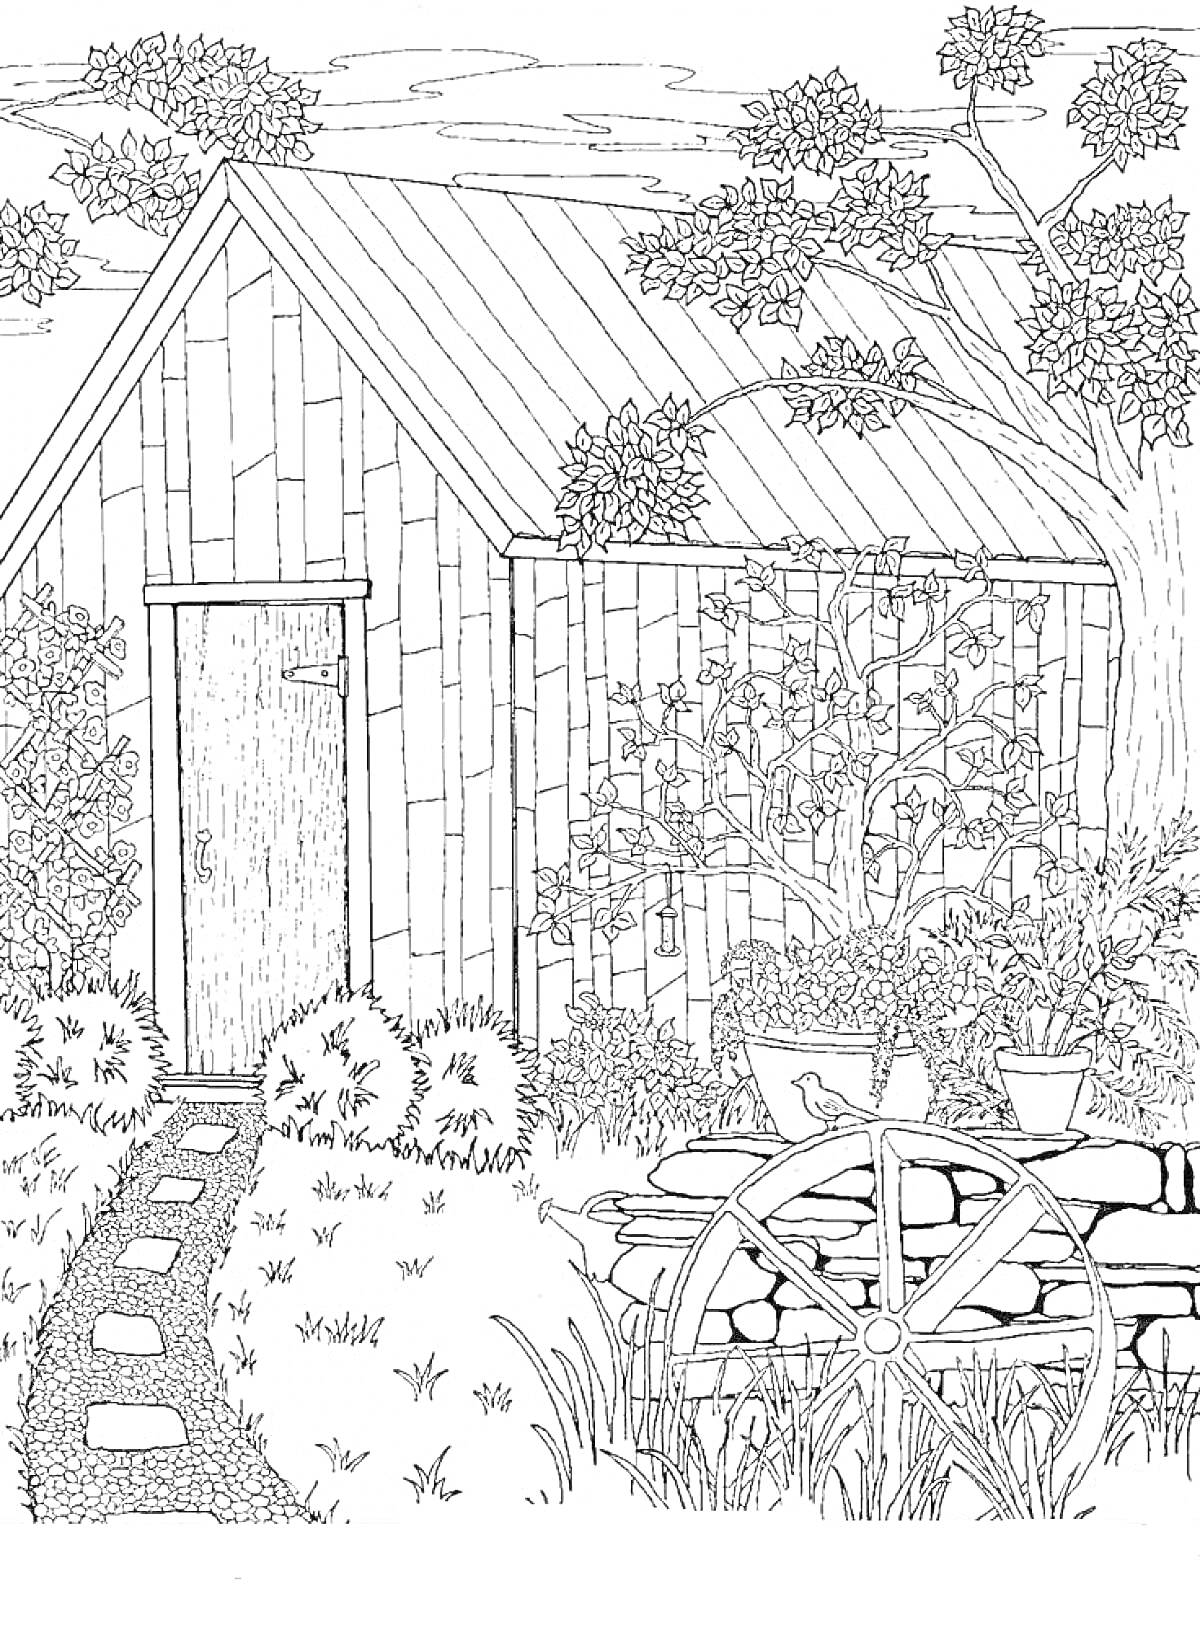 РаскраскаДеревянный сарай в саду с цветущими растениями, садовой телегой и деревьями